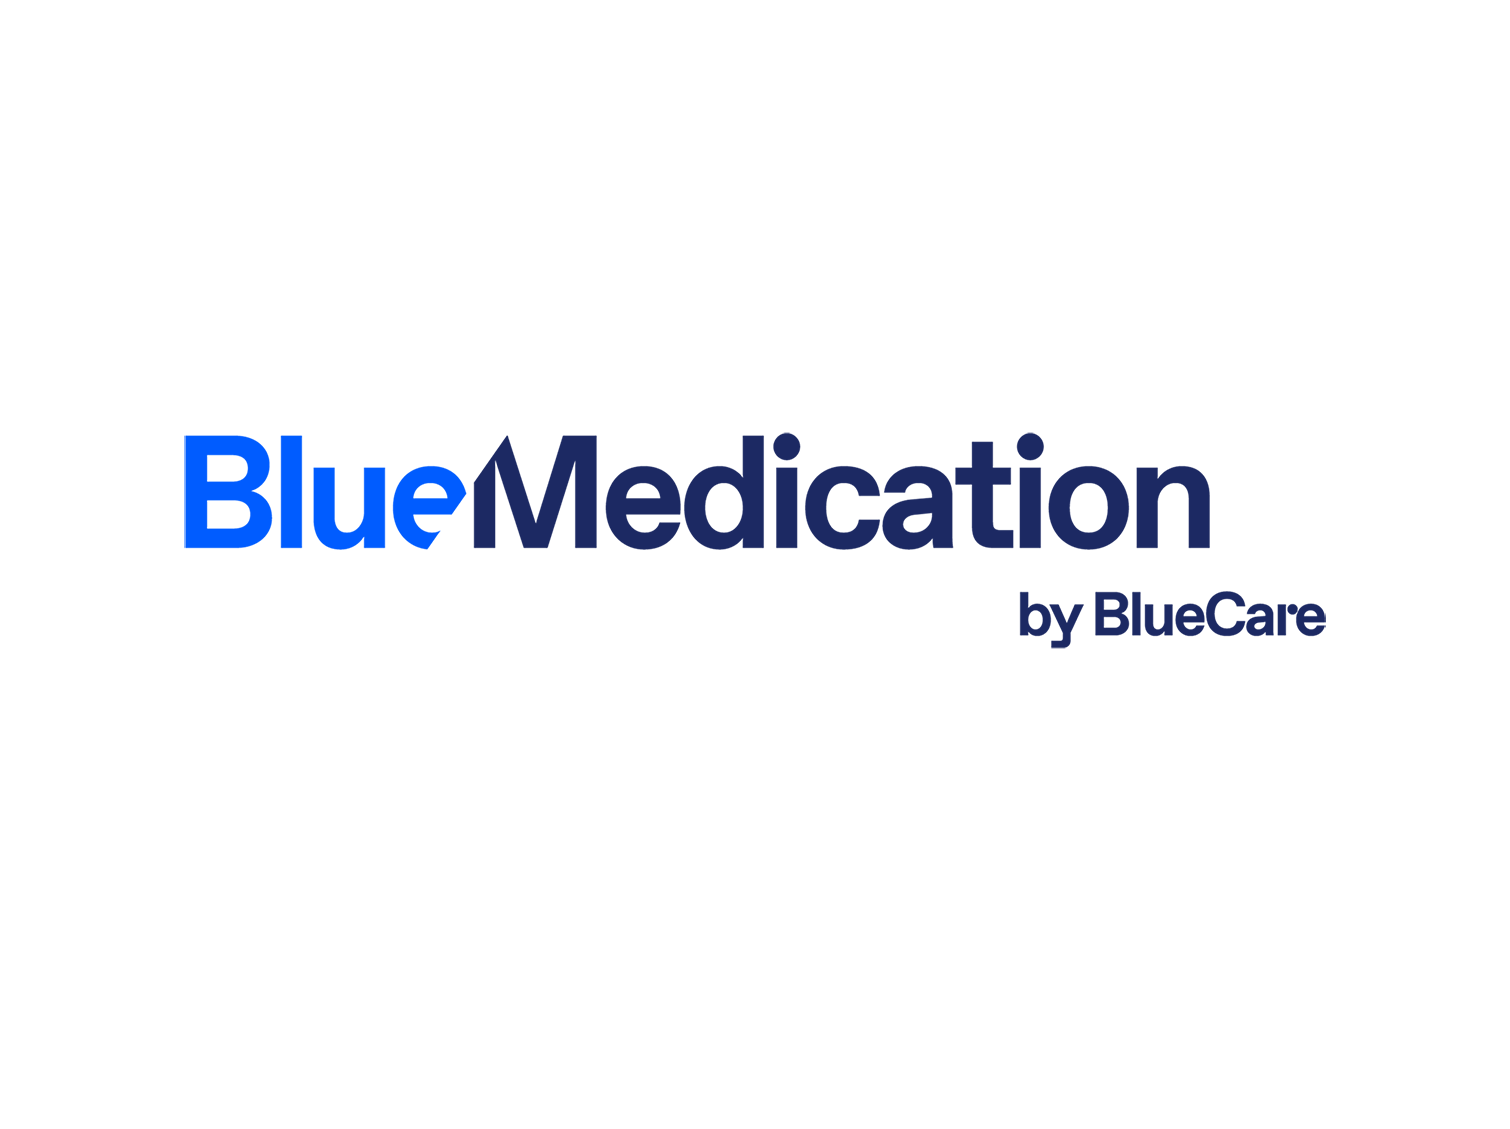 BlueCare lanciert Produkt für mehr Qualität und Sicherheit in der Medikation